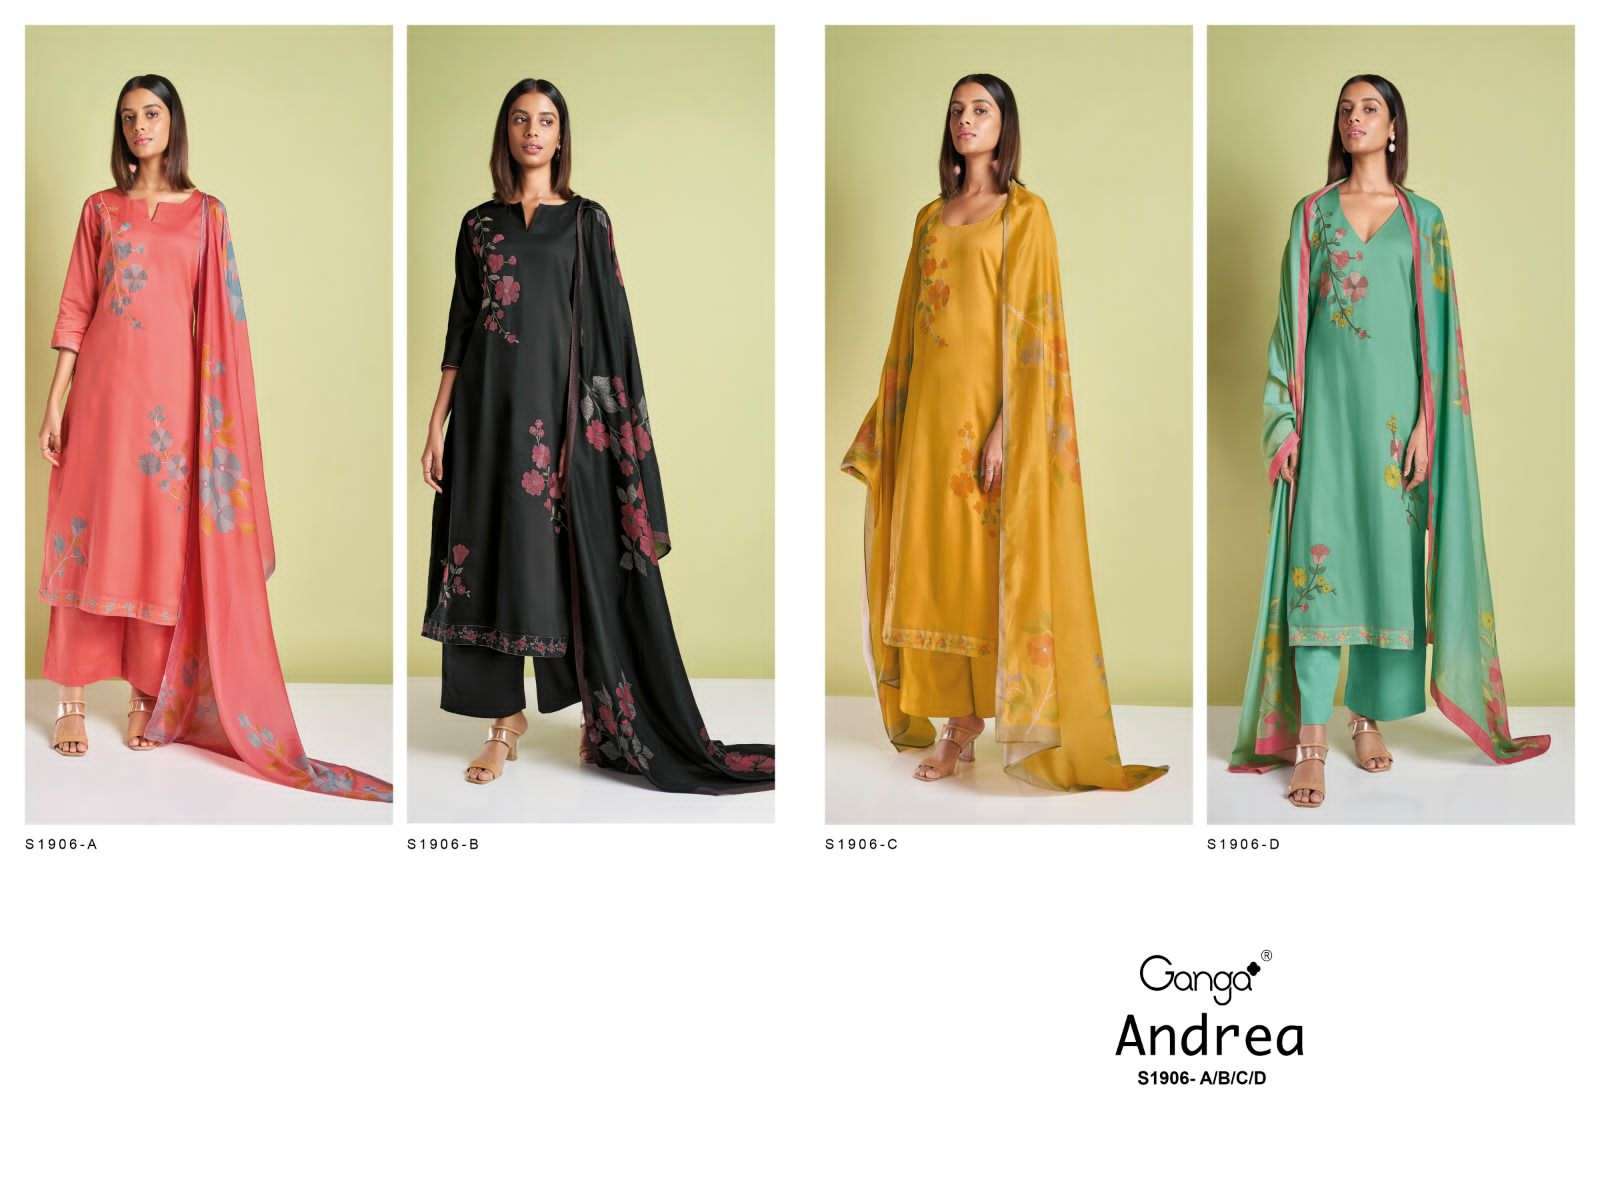 ganga andrea 1906 series indian designer salwar kameez catalogue wholesale price surat